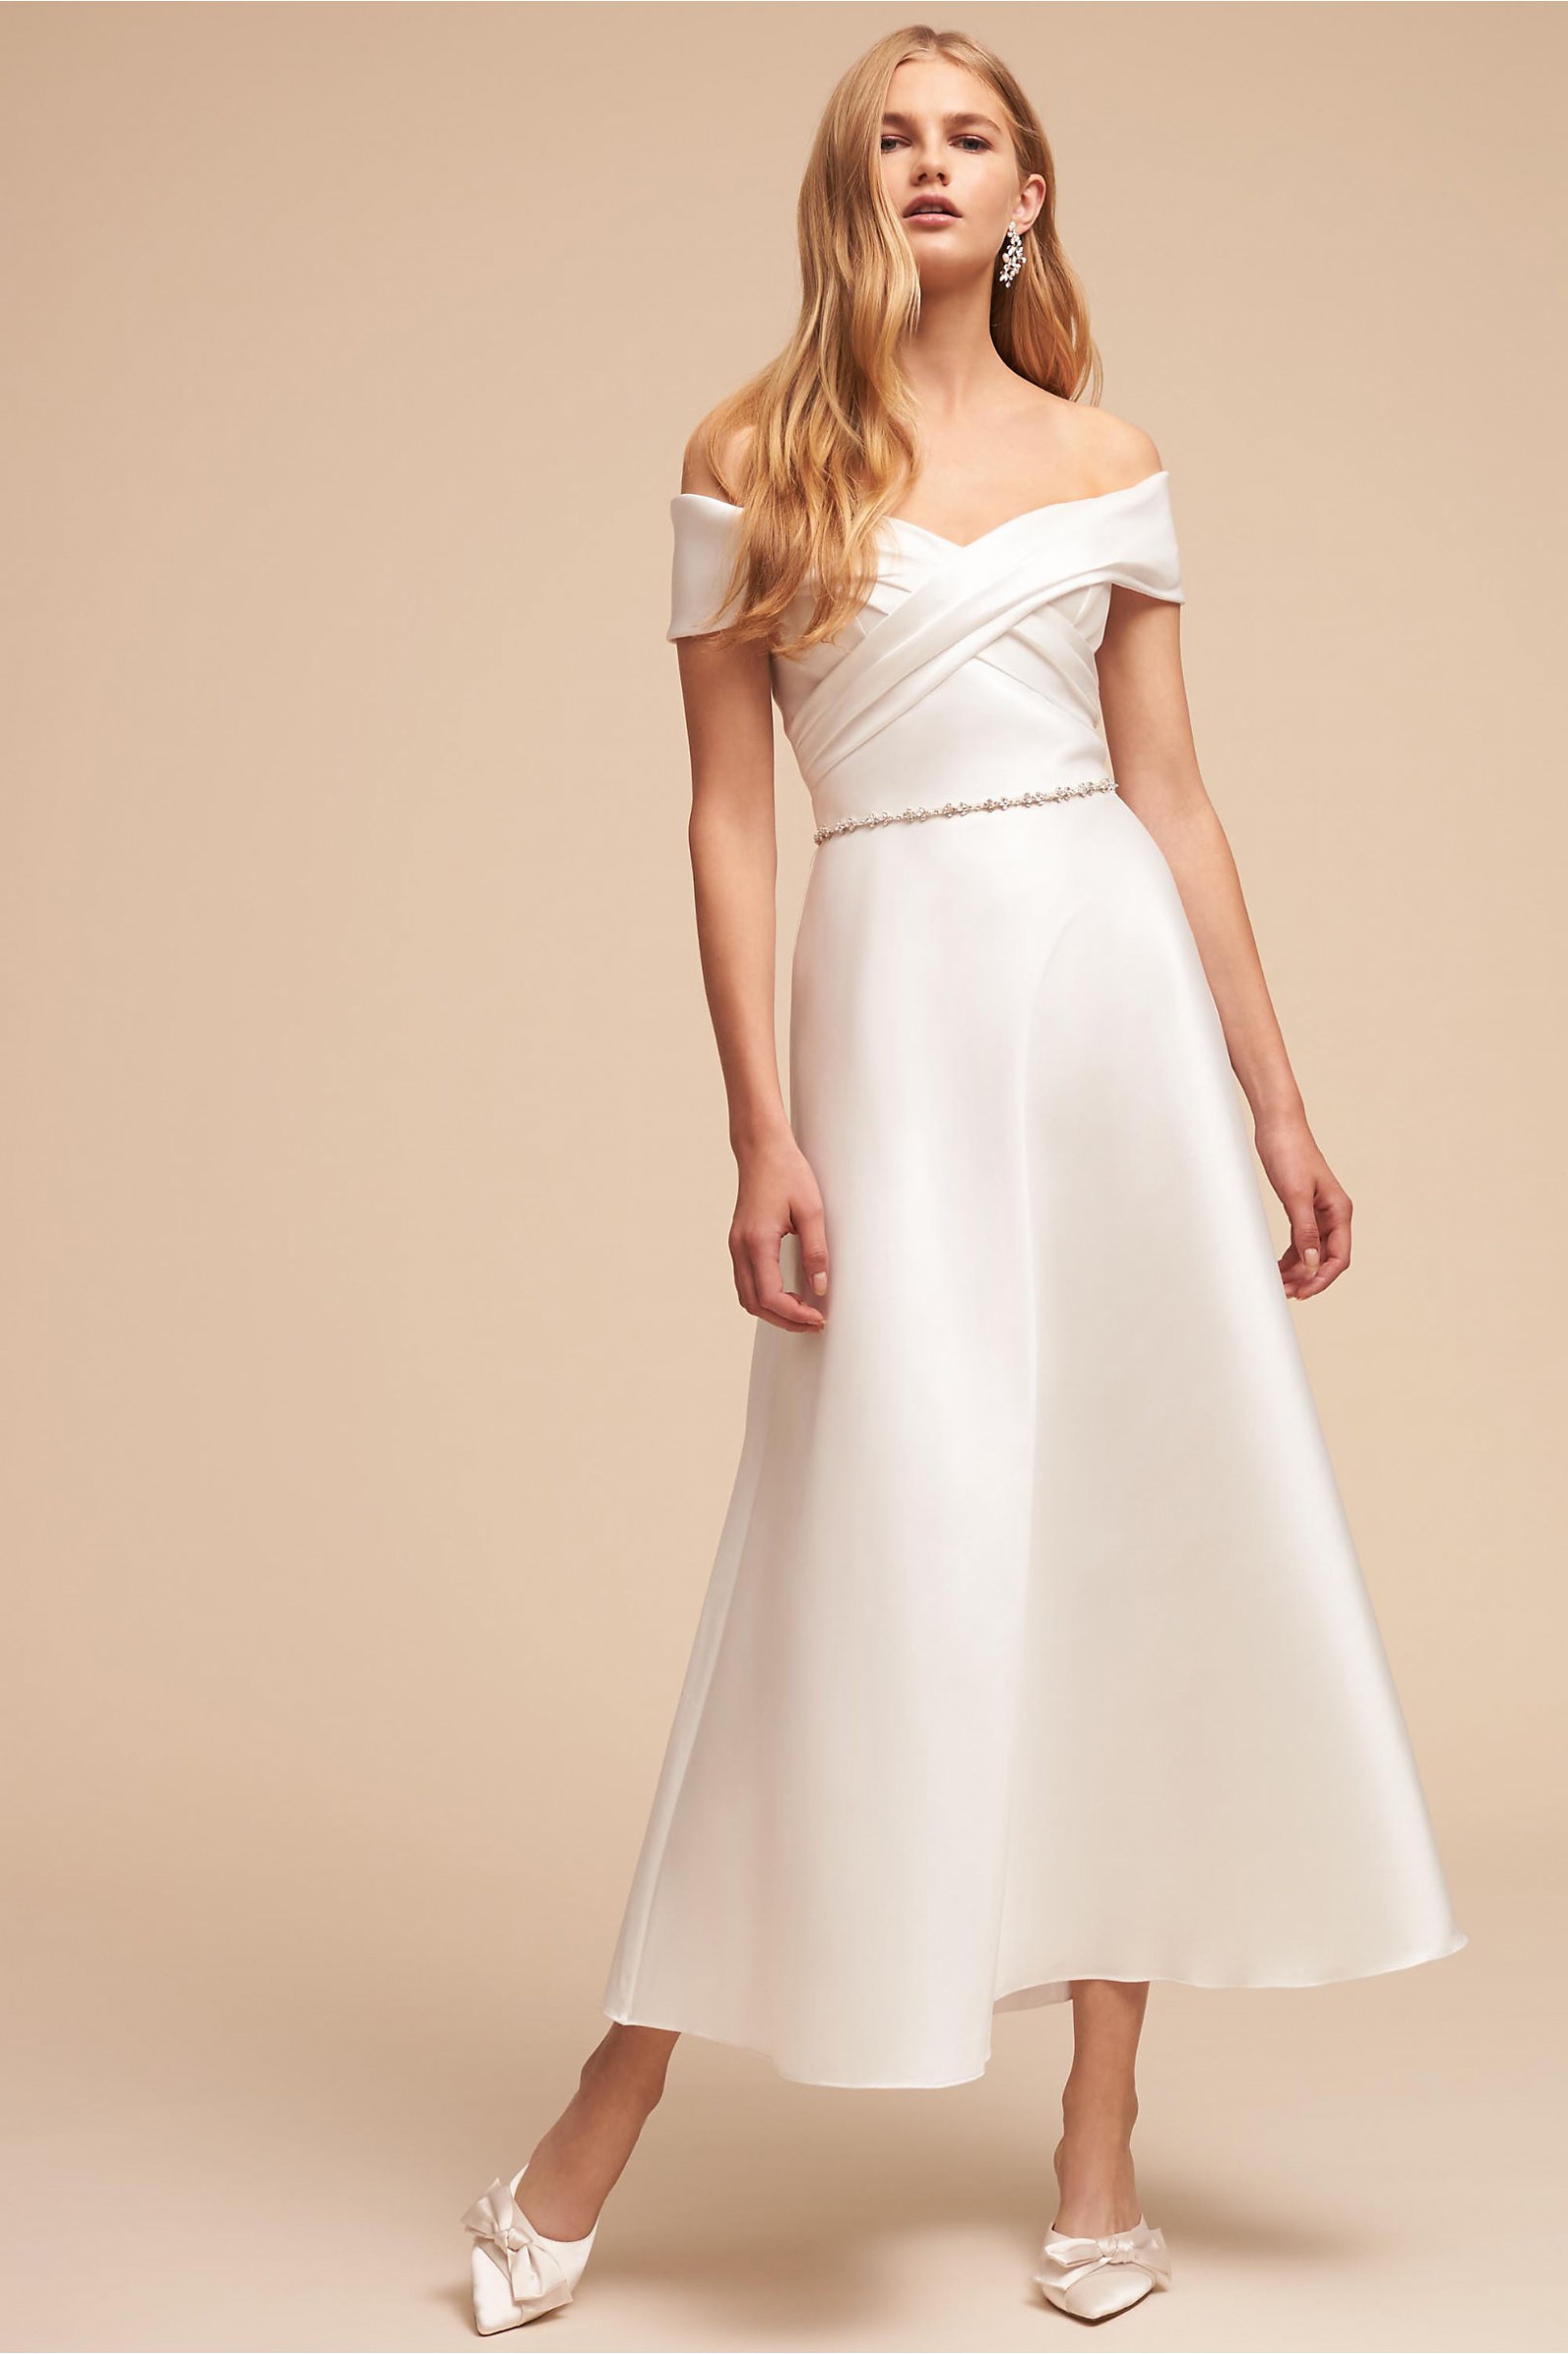 BHLDN Molly Gown by Theia Bridal New Wedding Dress Save 25% - Stillwhite